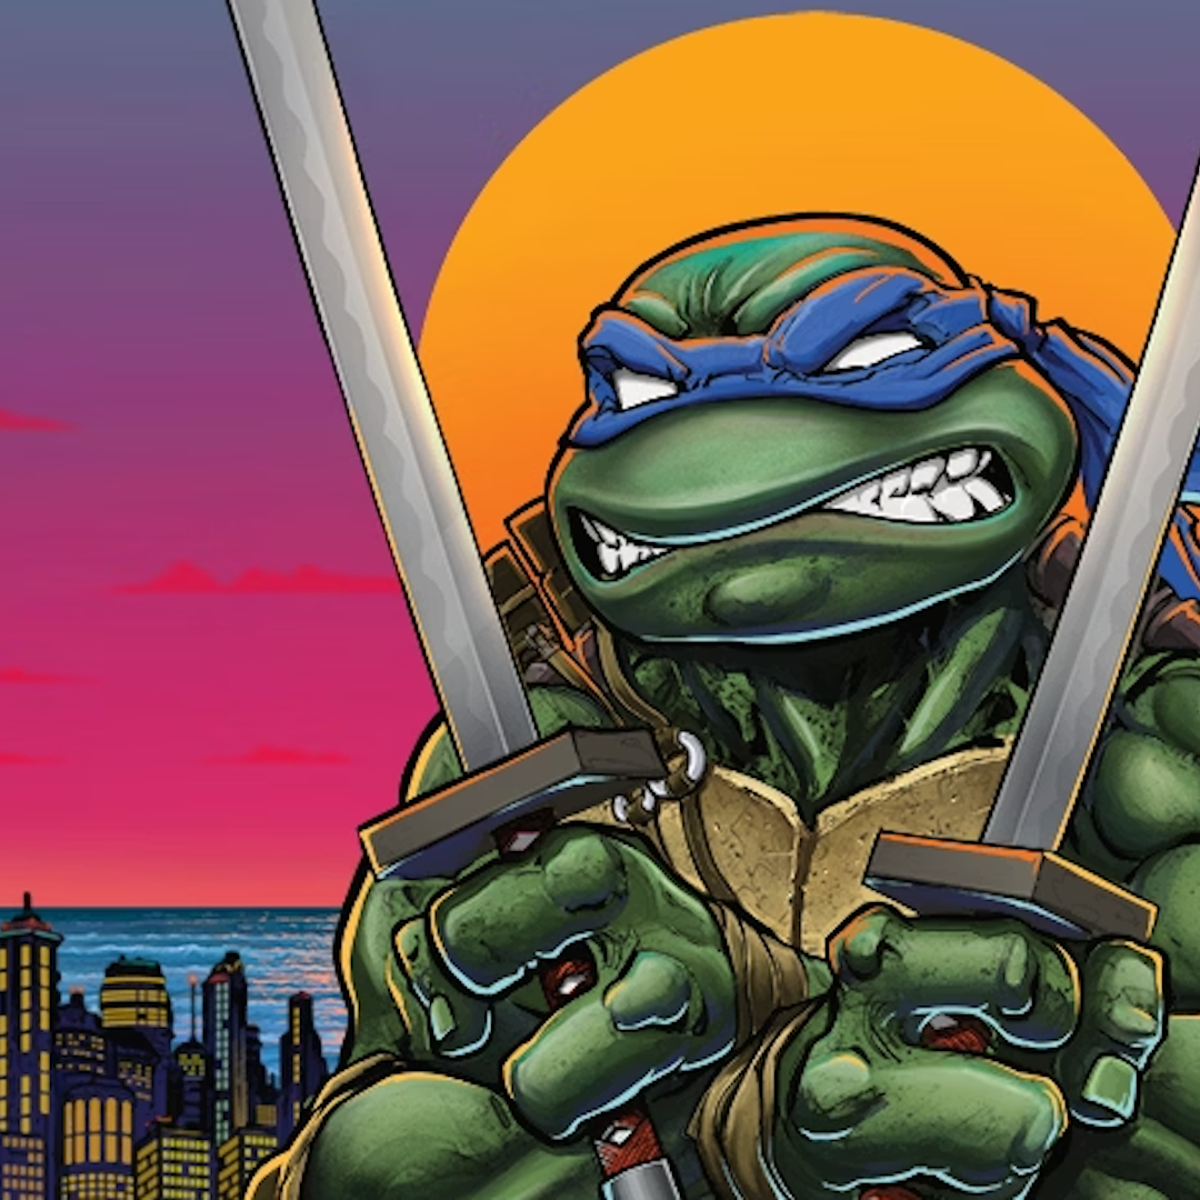 Teenage Mutant Ninja Turtles RPG reprint revives a 1980s tabletop